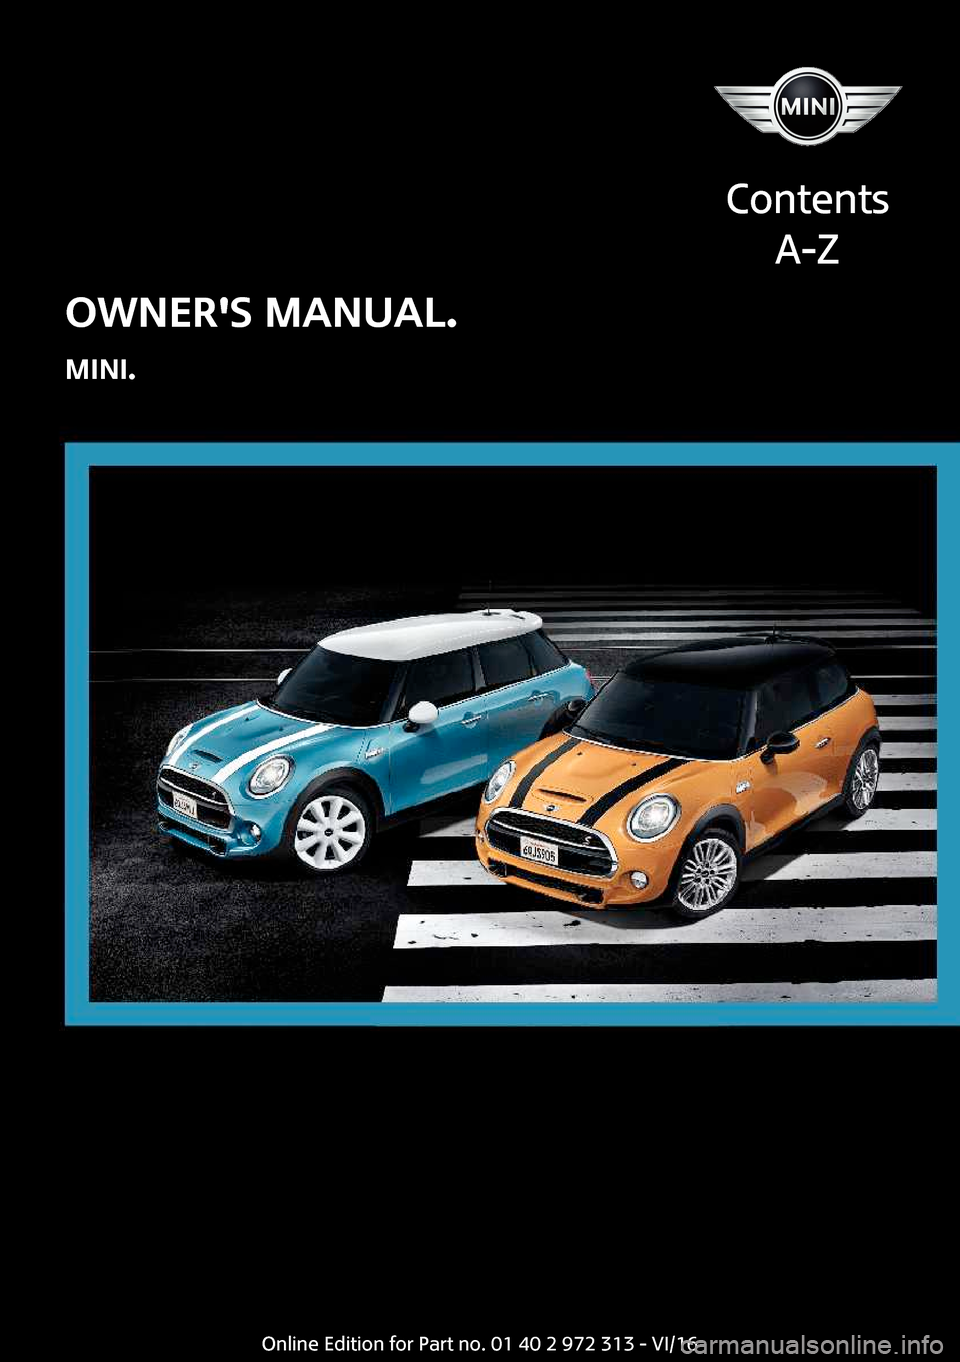 MINI 3 door 2016  Owners Manual �O�W�N�E�R��S��M�A�N�U�A�L�.
�M�I�N�I�.
�C�o�n�t�e�n�t�s �A�-�Z�O�n�l�i�n�e� �E�d�i�t�i�o�n� �f�o�r� �P�a�r�t� �n�o�.� �0�1� �4�0� �2� �9�7�2� �3�1�3� �-� �V�I�/�1�6  